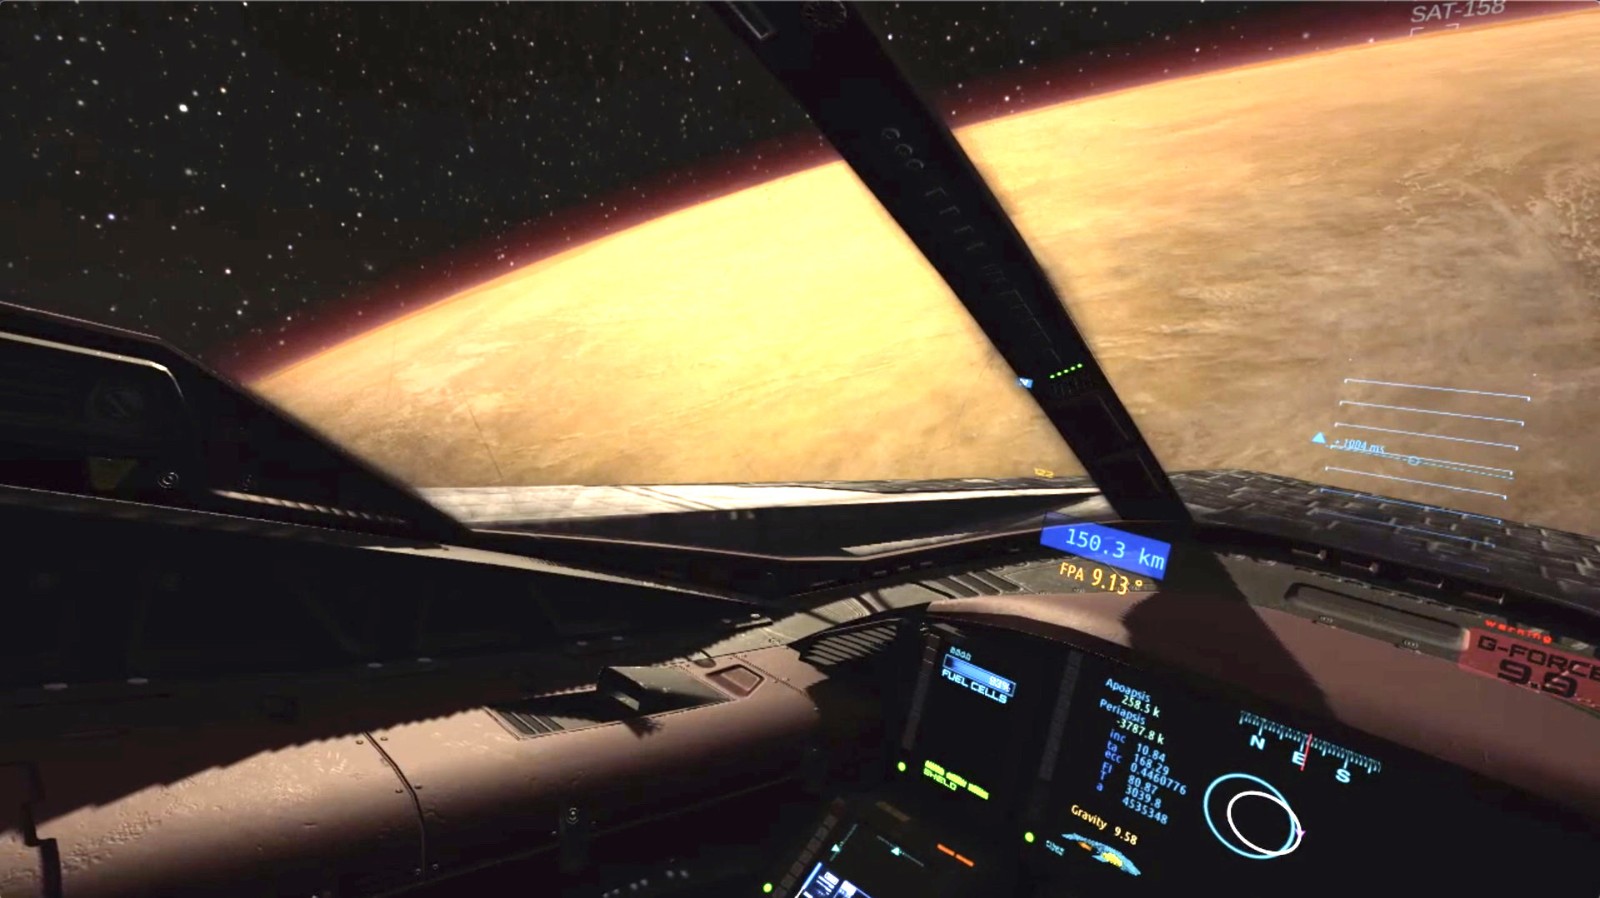 太空飞行模拟器《Flight Of Nova》6月Steam抢先体验